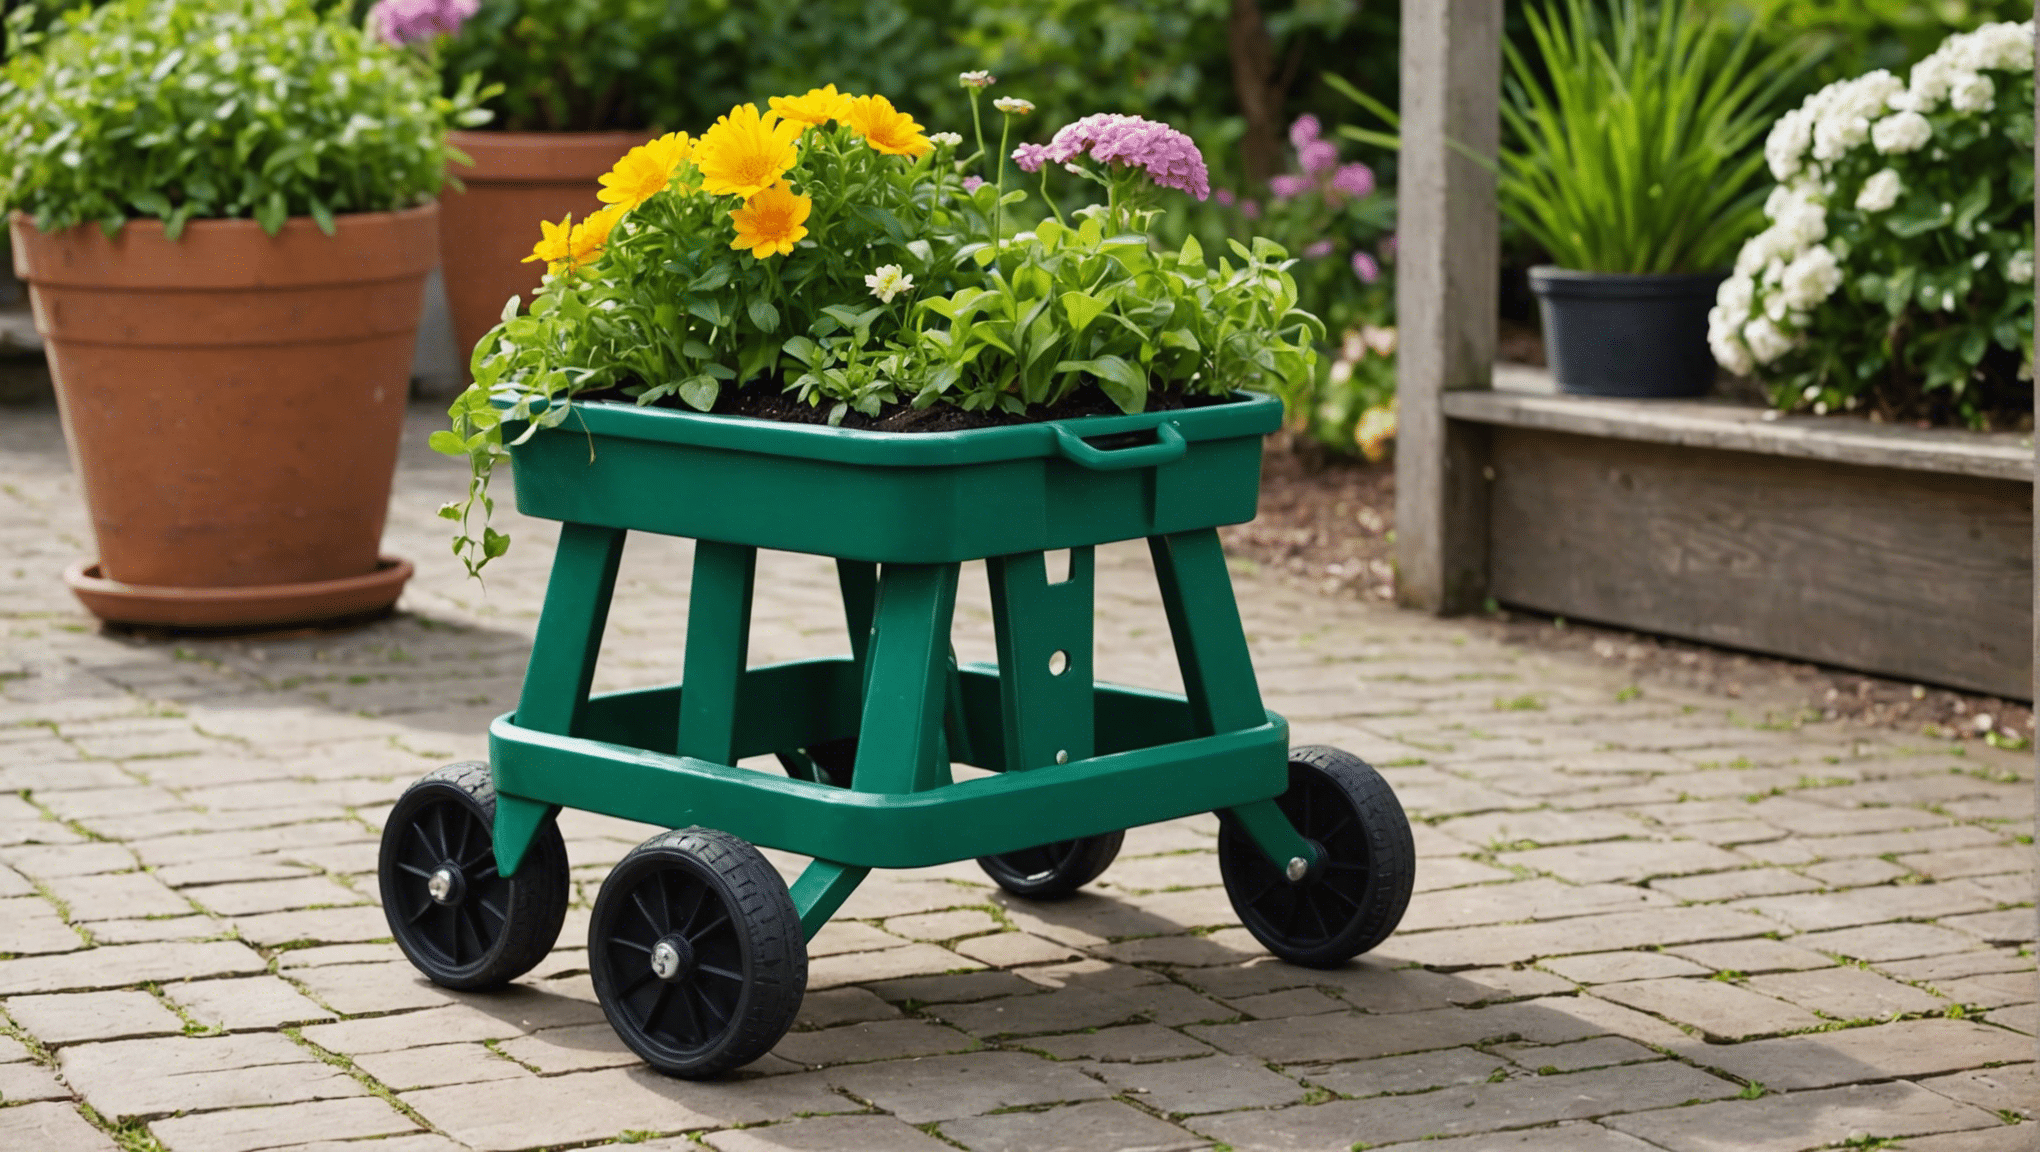 objavte výhody záhradných stoličiek s kolieskami a zistite, či sú pre vaše záhradnícke potreby výhodnou investíciou.